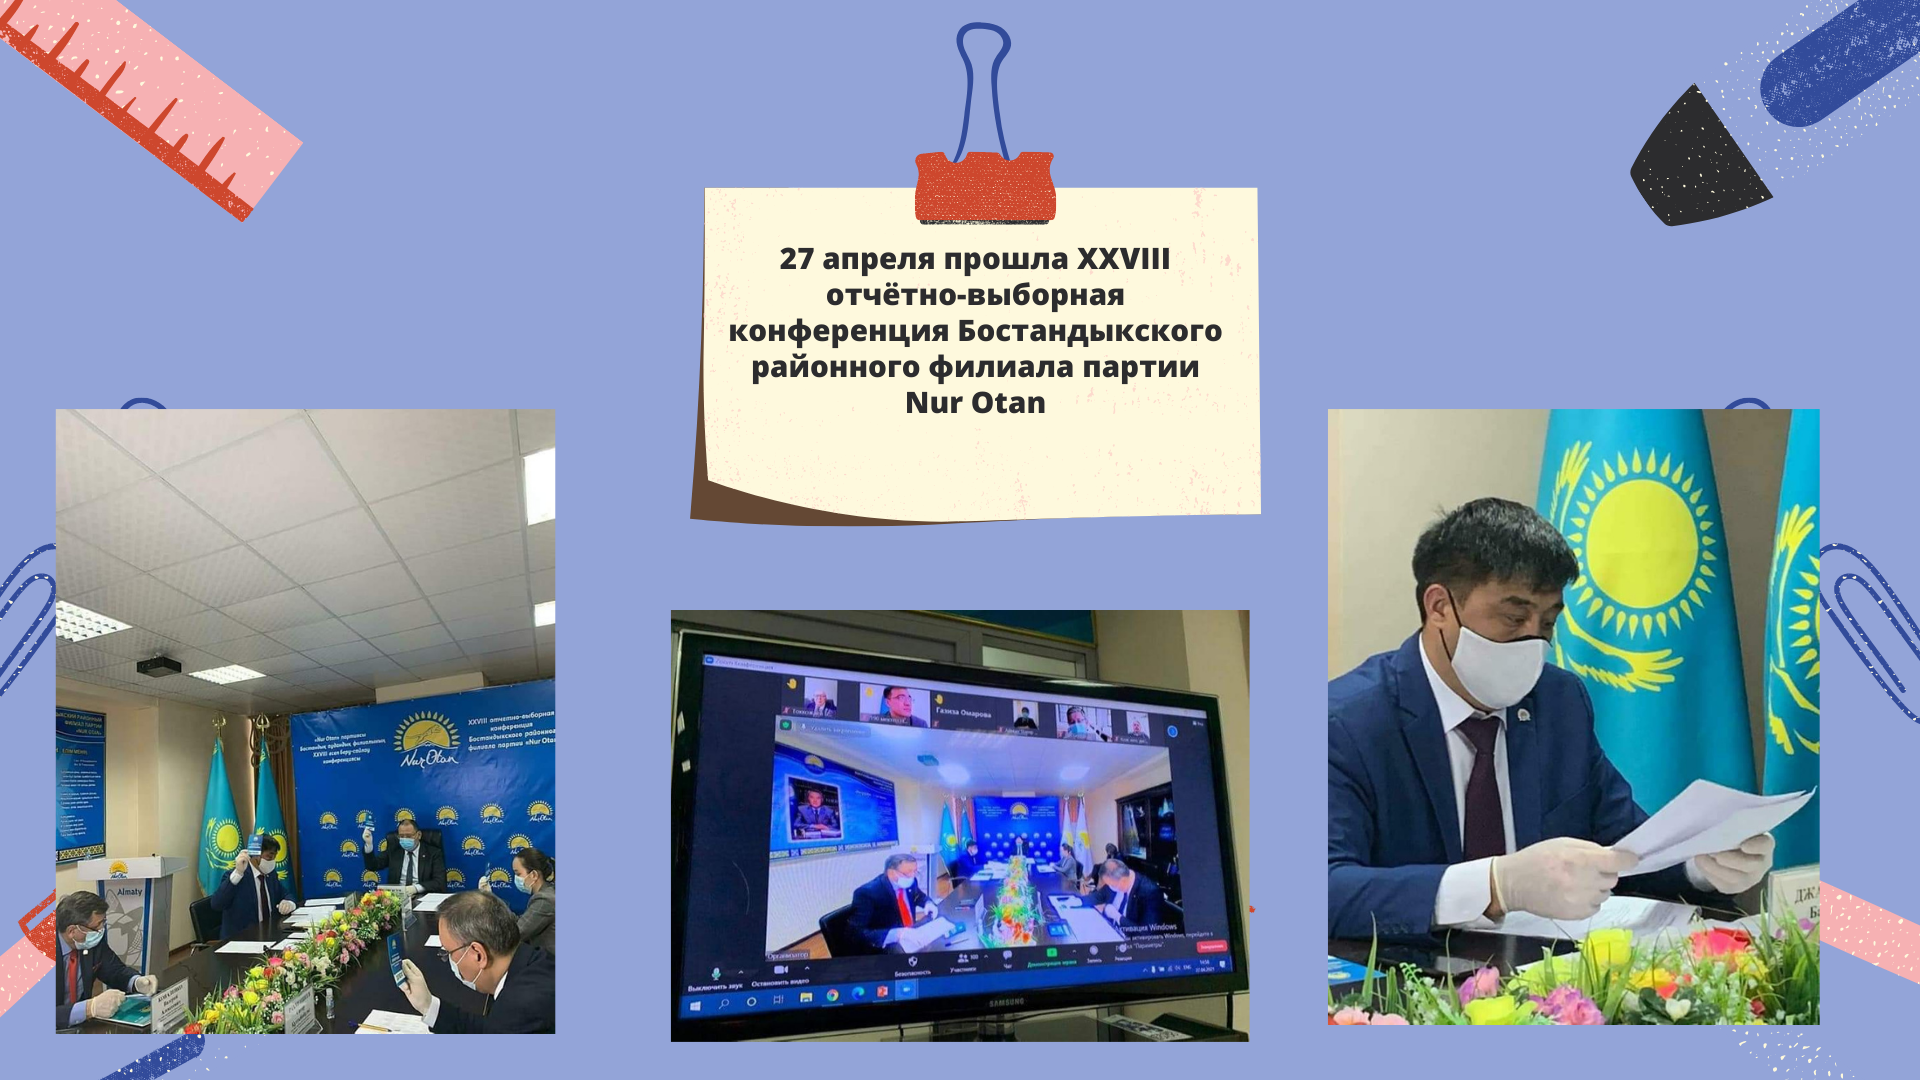 Отчётно-выборная конференция Бостандыкского районного филиала партии Nur Otan